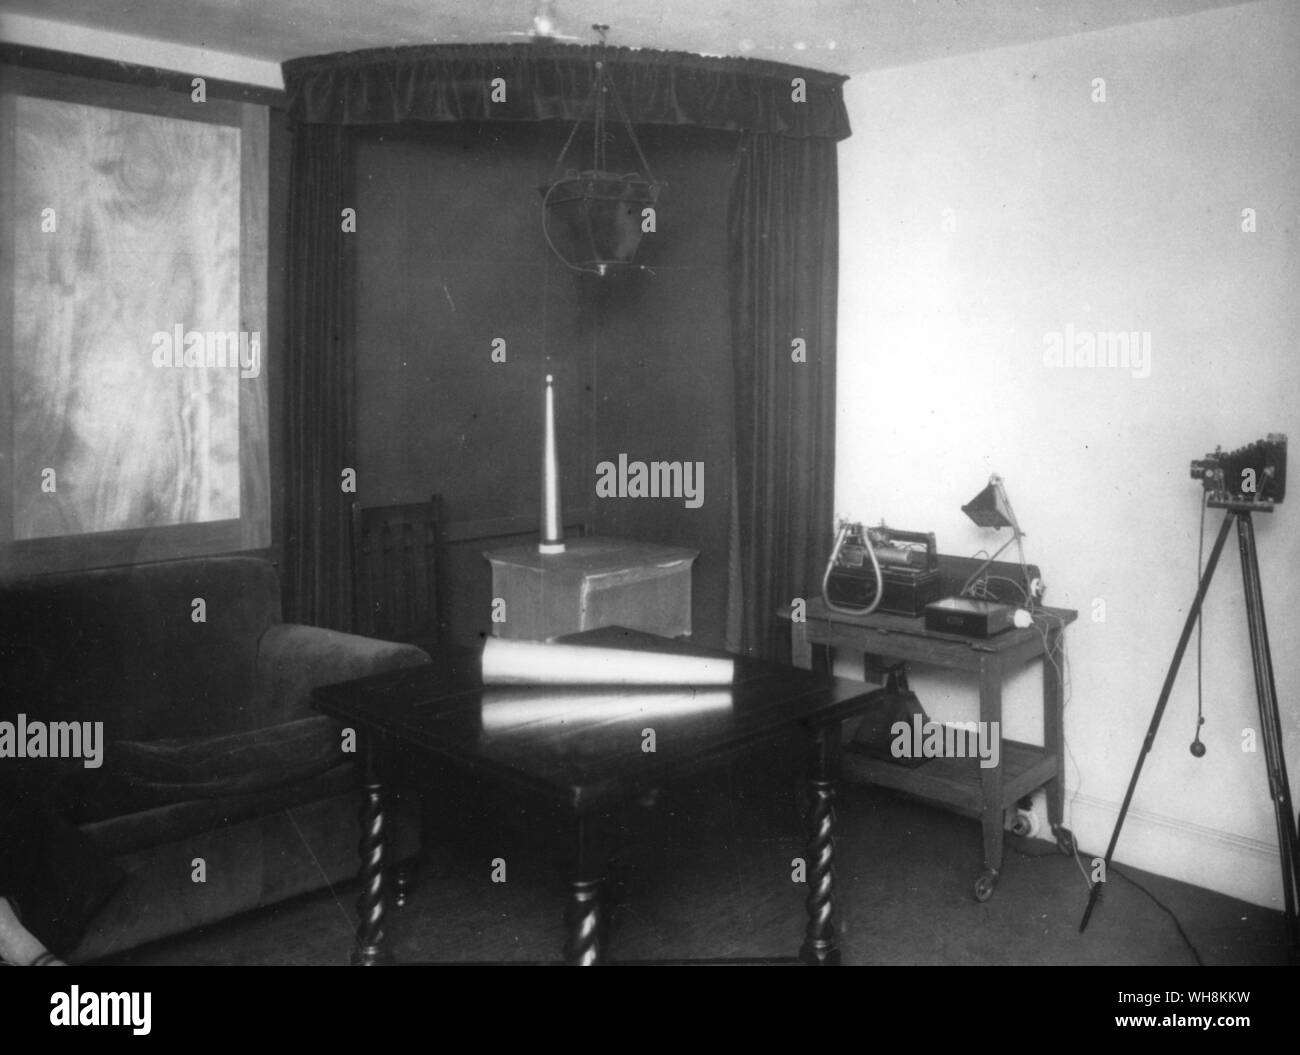 Seance Zimmer und Cabinet Labor an der psychischen Forschung Queensbury Ort Stockfoto